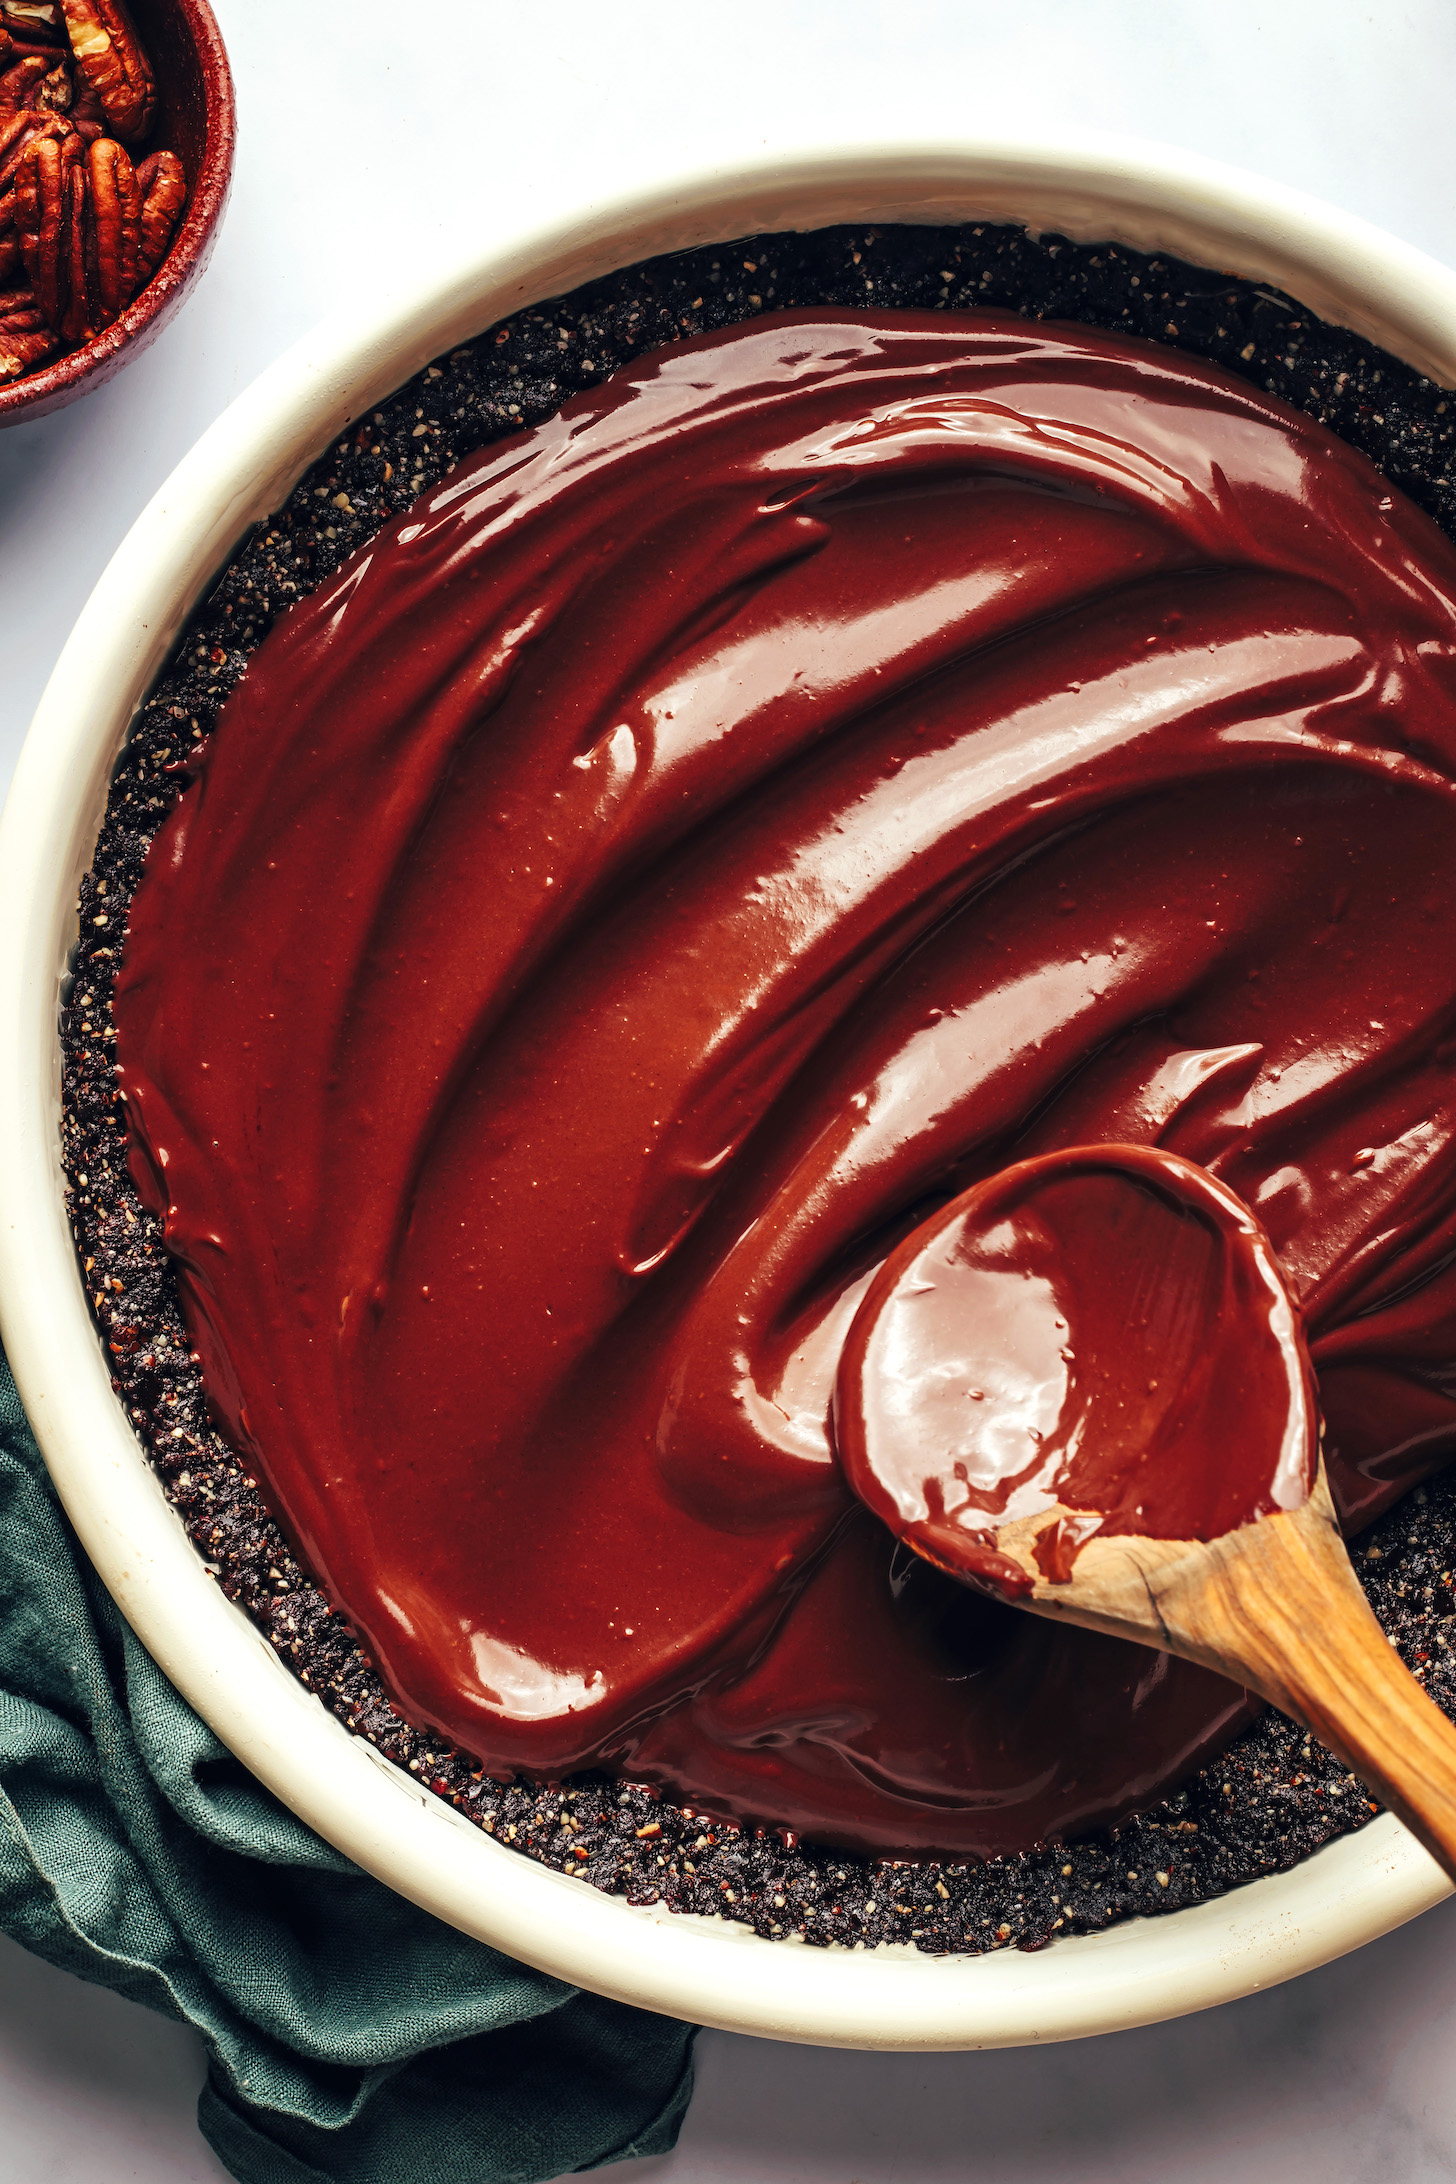 Extender una gruesa capa de relleno de chocolate similar a una ganache en una masa de pastel